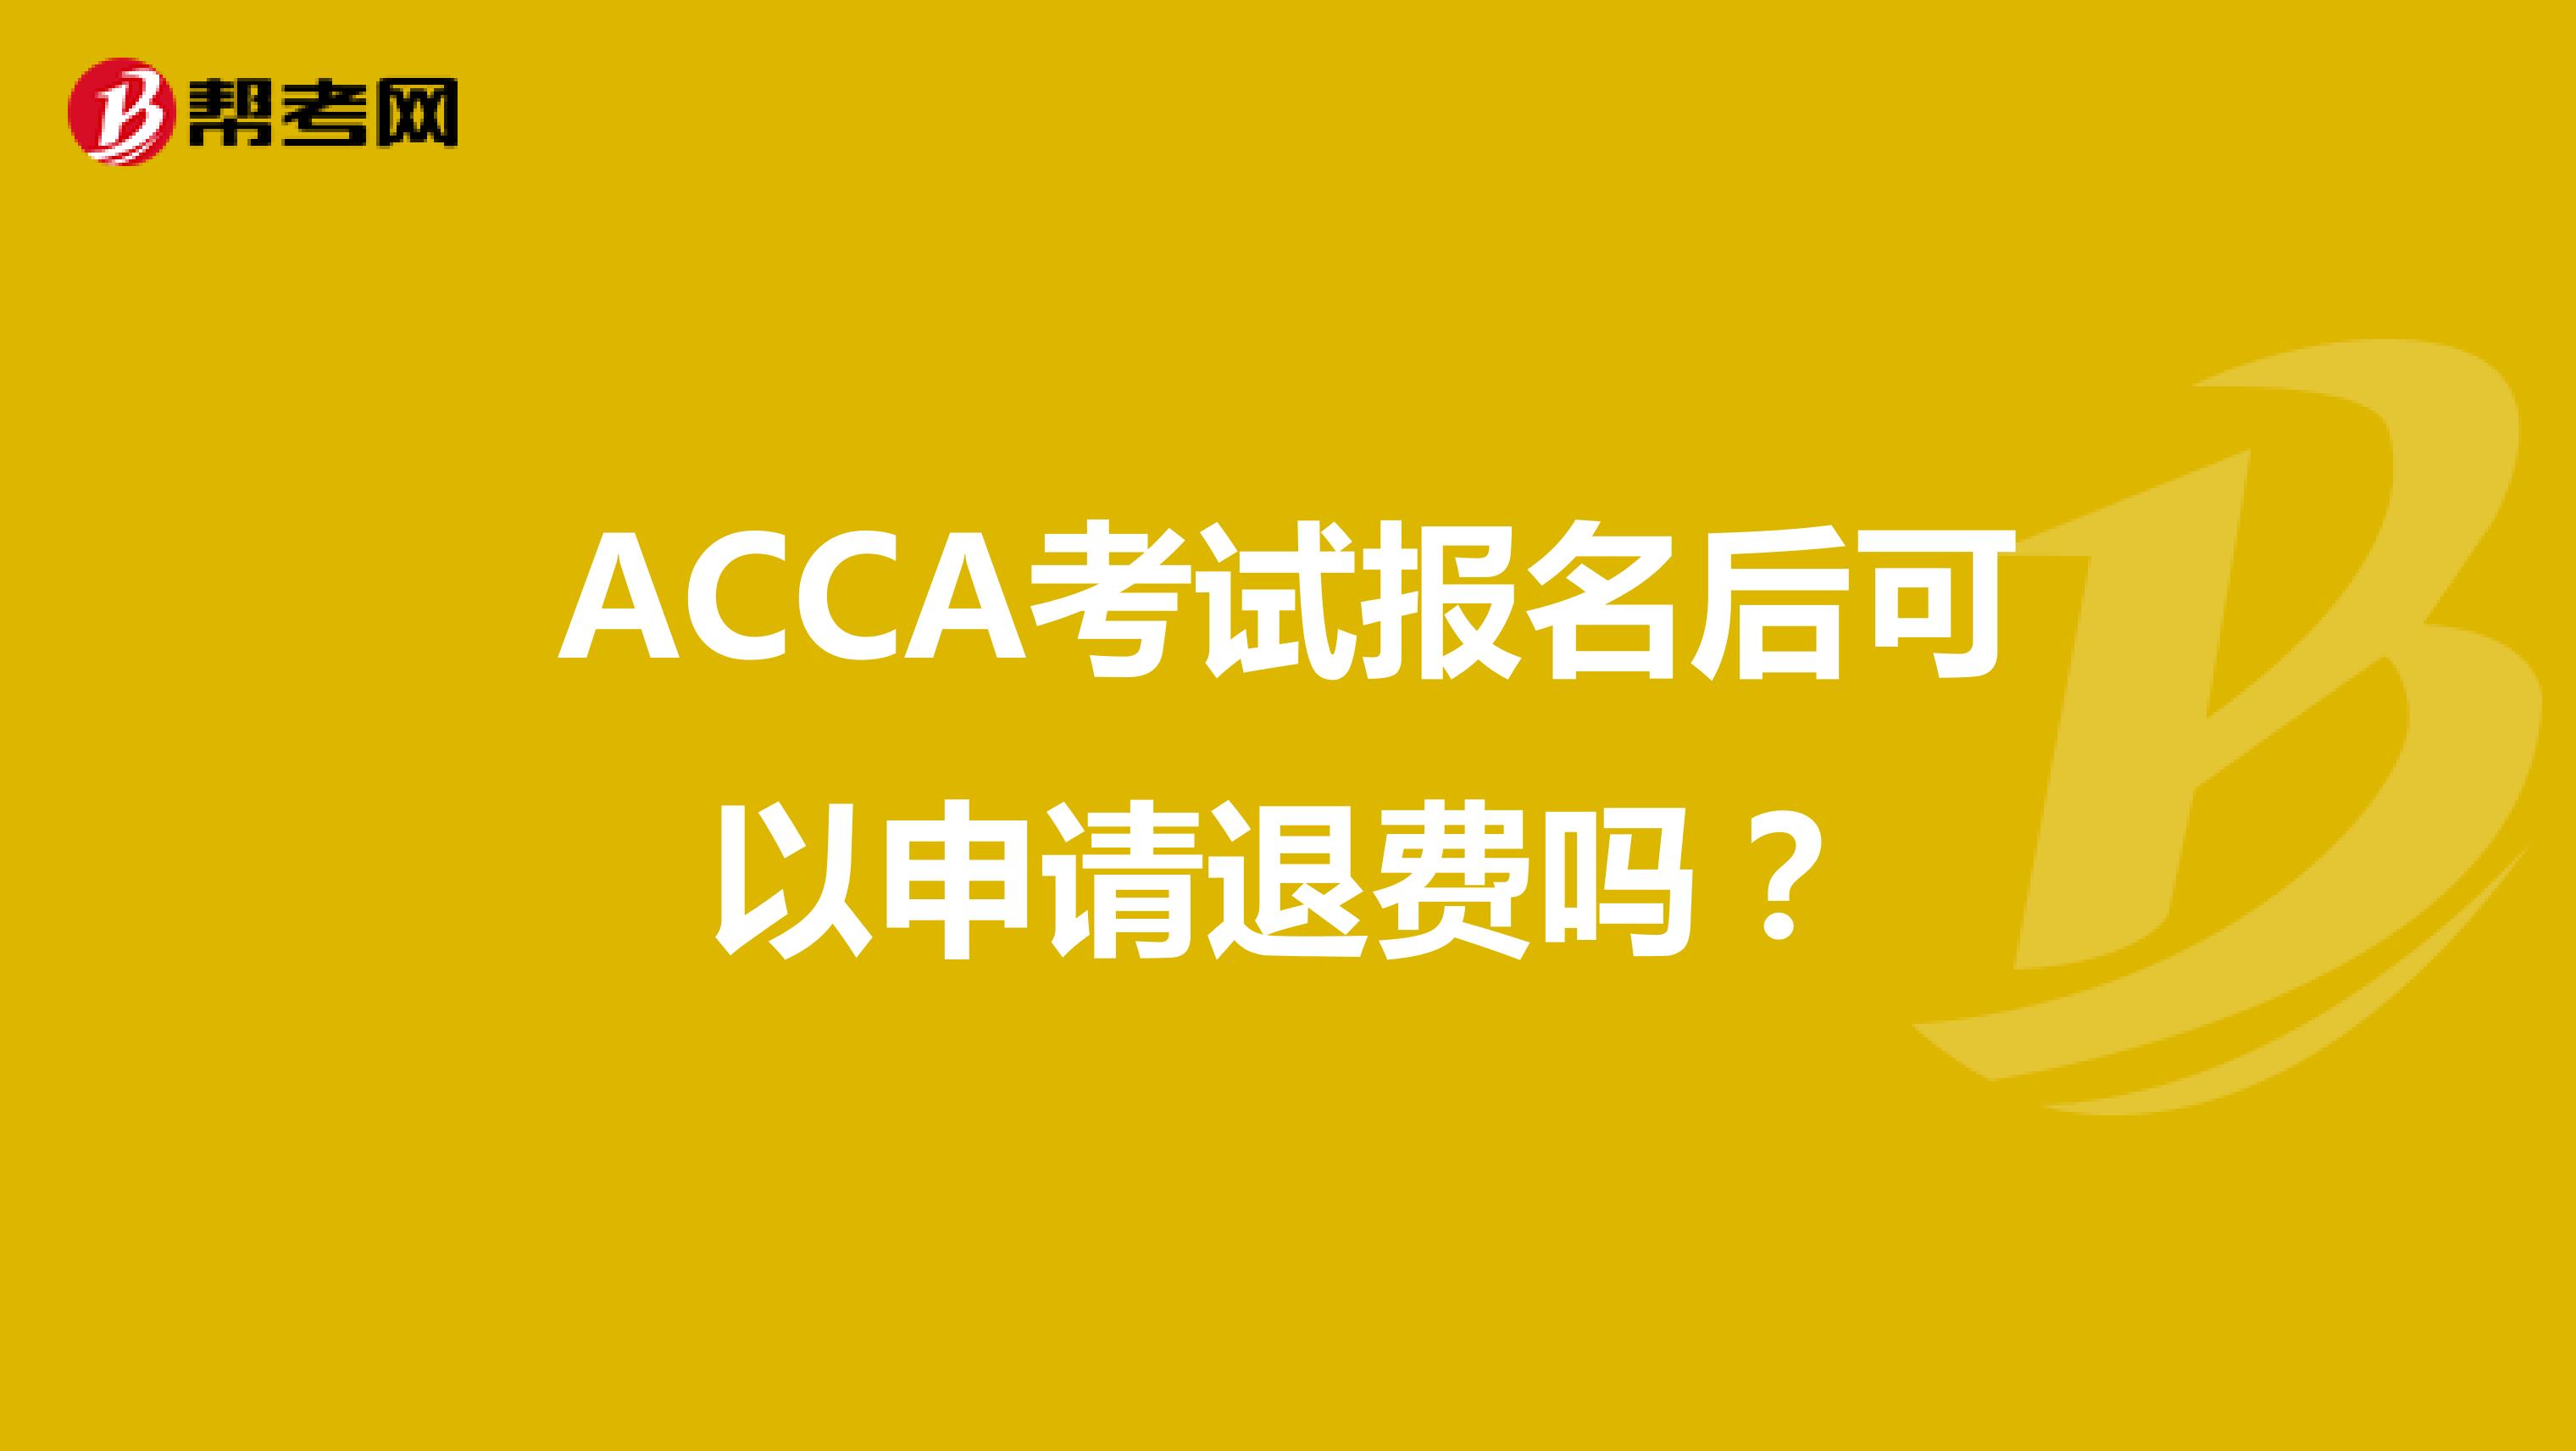 ACCA考试报名后可以申请退费吗？